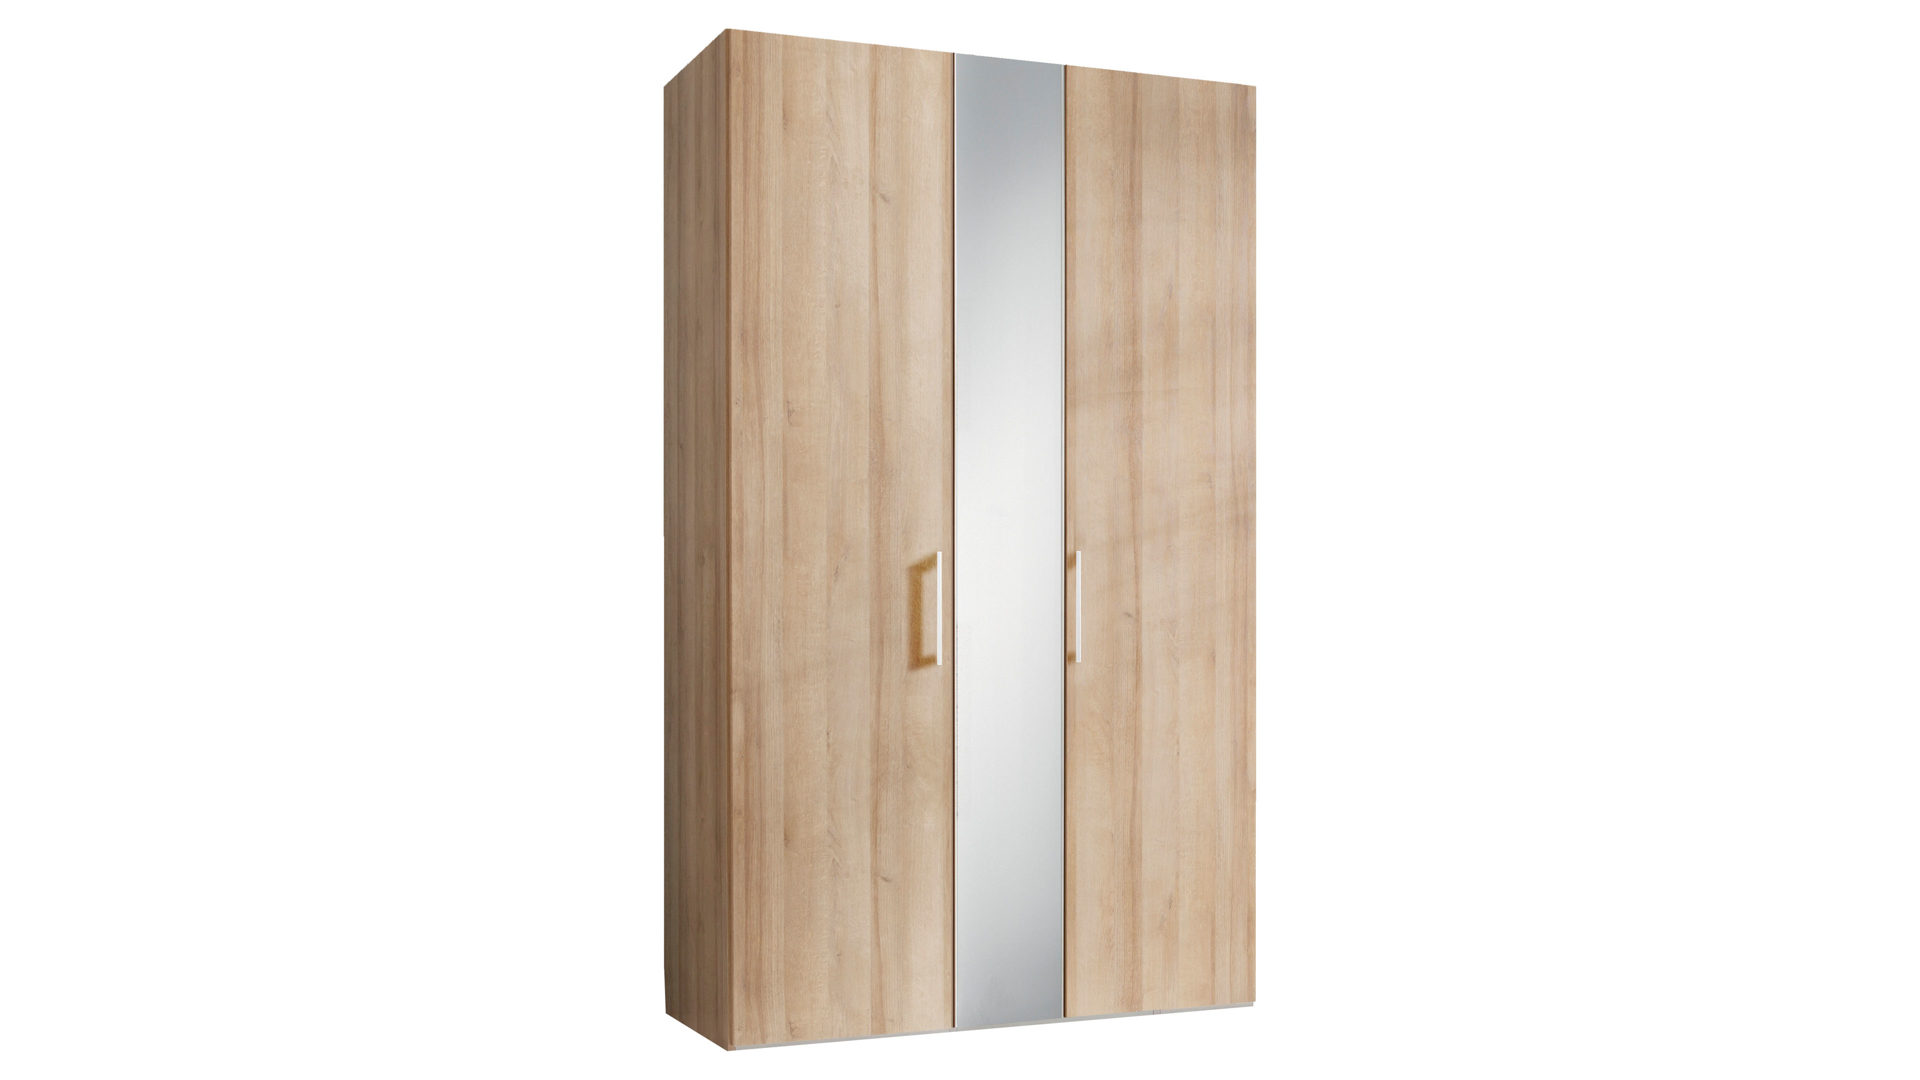 Kleiderschrank Express möbel aus Holz in Holzfarben Kleiderschrank Sonoma eichefarbene Kunststoffoberflächen – zwei Türen, Breite ca. 125 cm